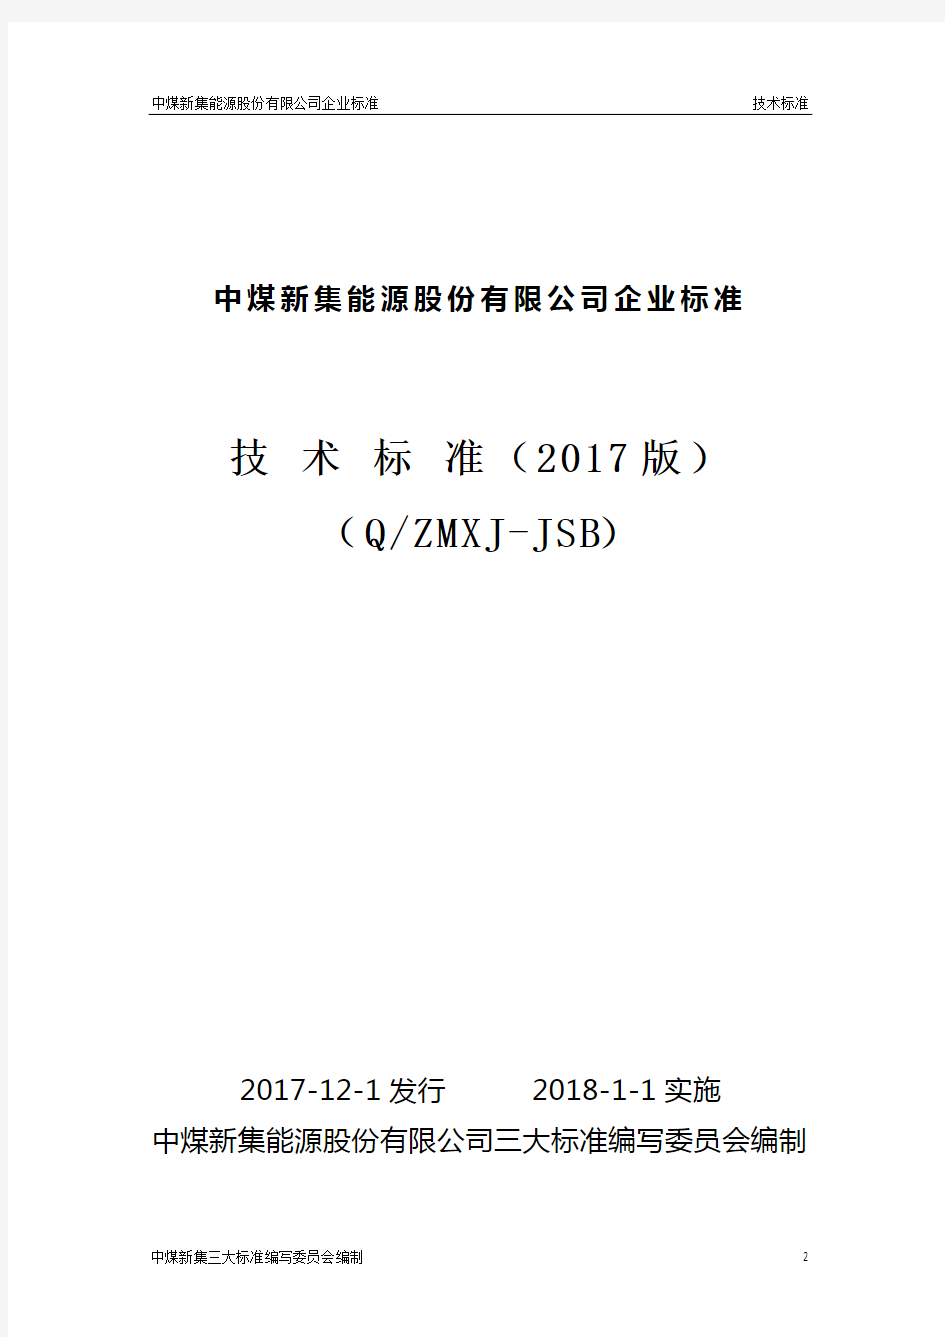 煤矿机电技术标准2017(三大标准)